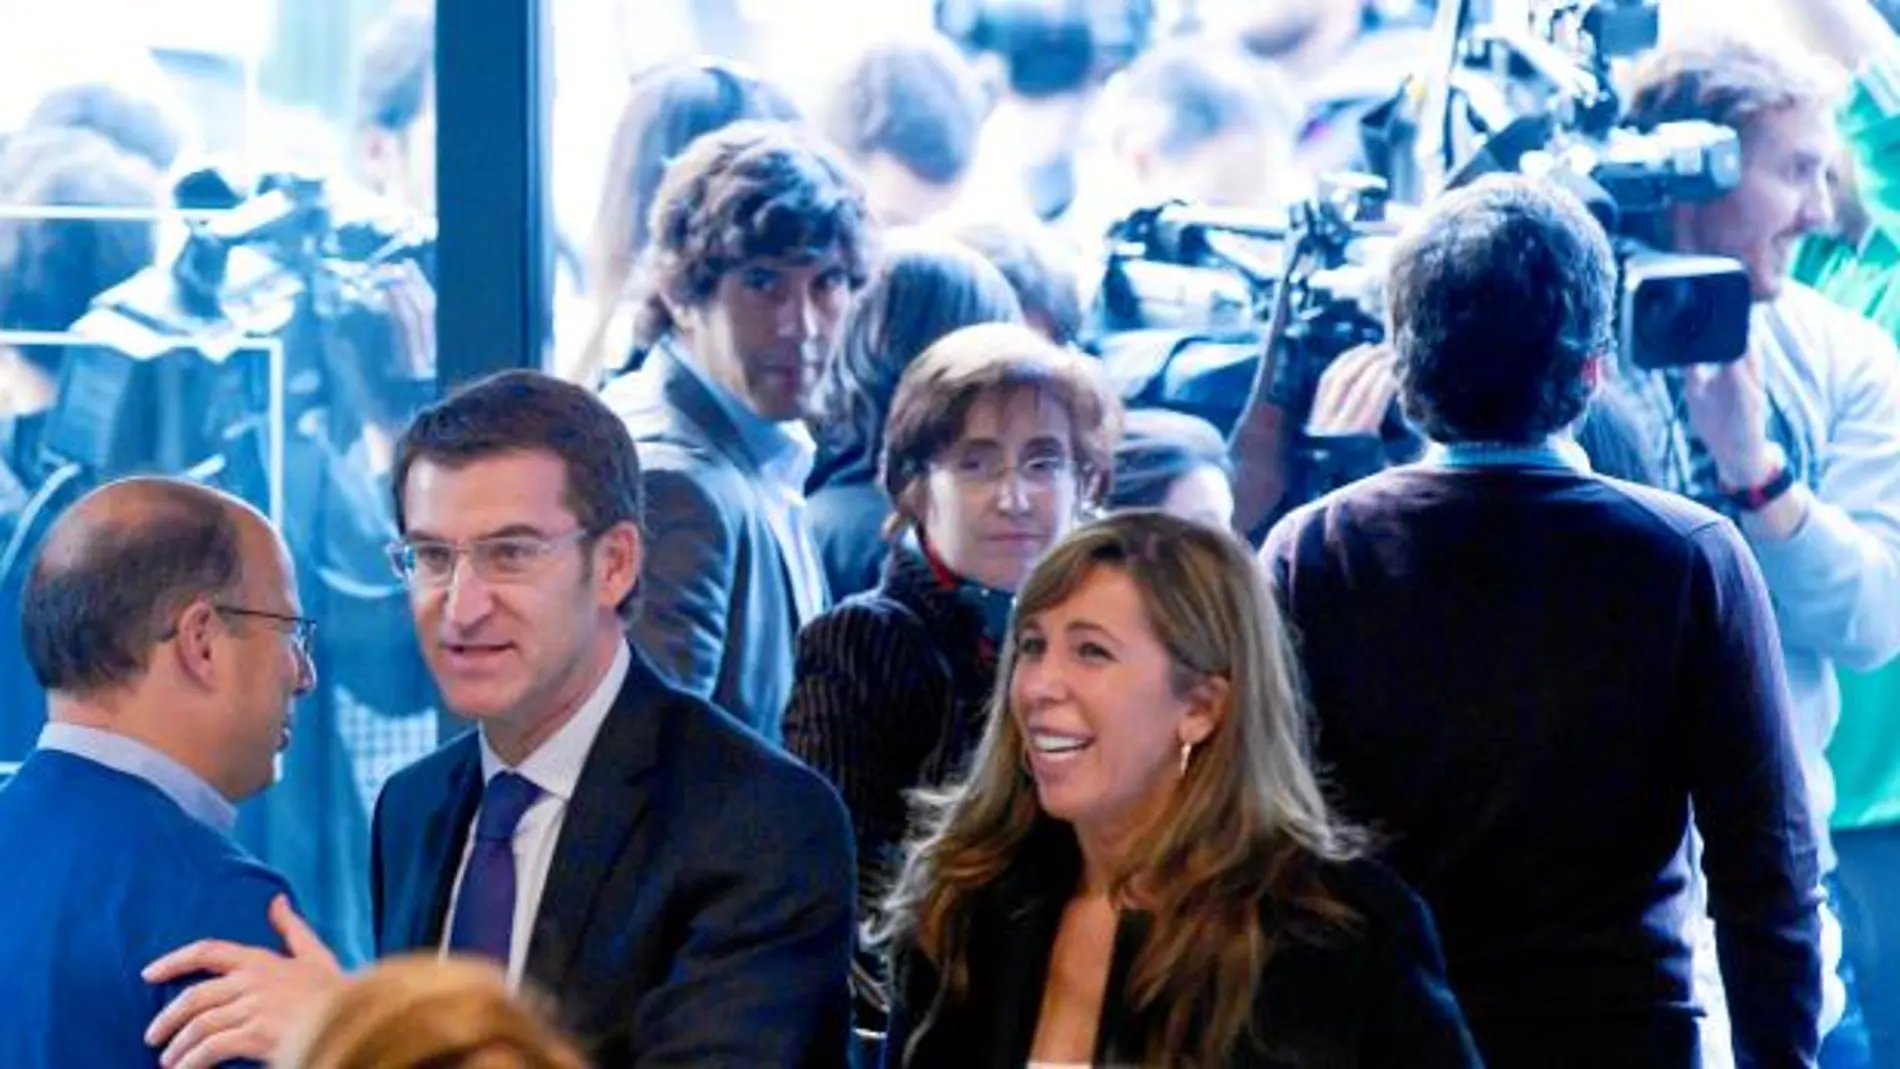 Alberto Núñez Feijóo, acompañado por la presidenta del Partido Popular en Cataluña, Alicia Sánchez-Camacho, entra en la sede madrileña del PP, ayer, para asistir a la reunión del Comité Ejecutivo Nacional tras su victoria en Galicia